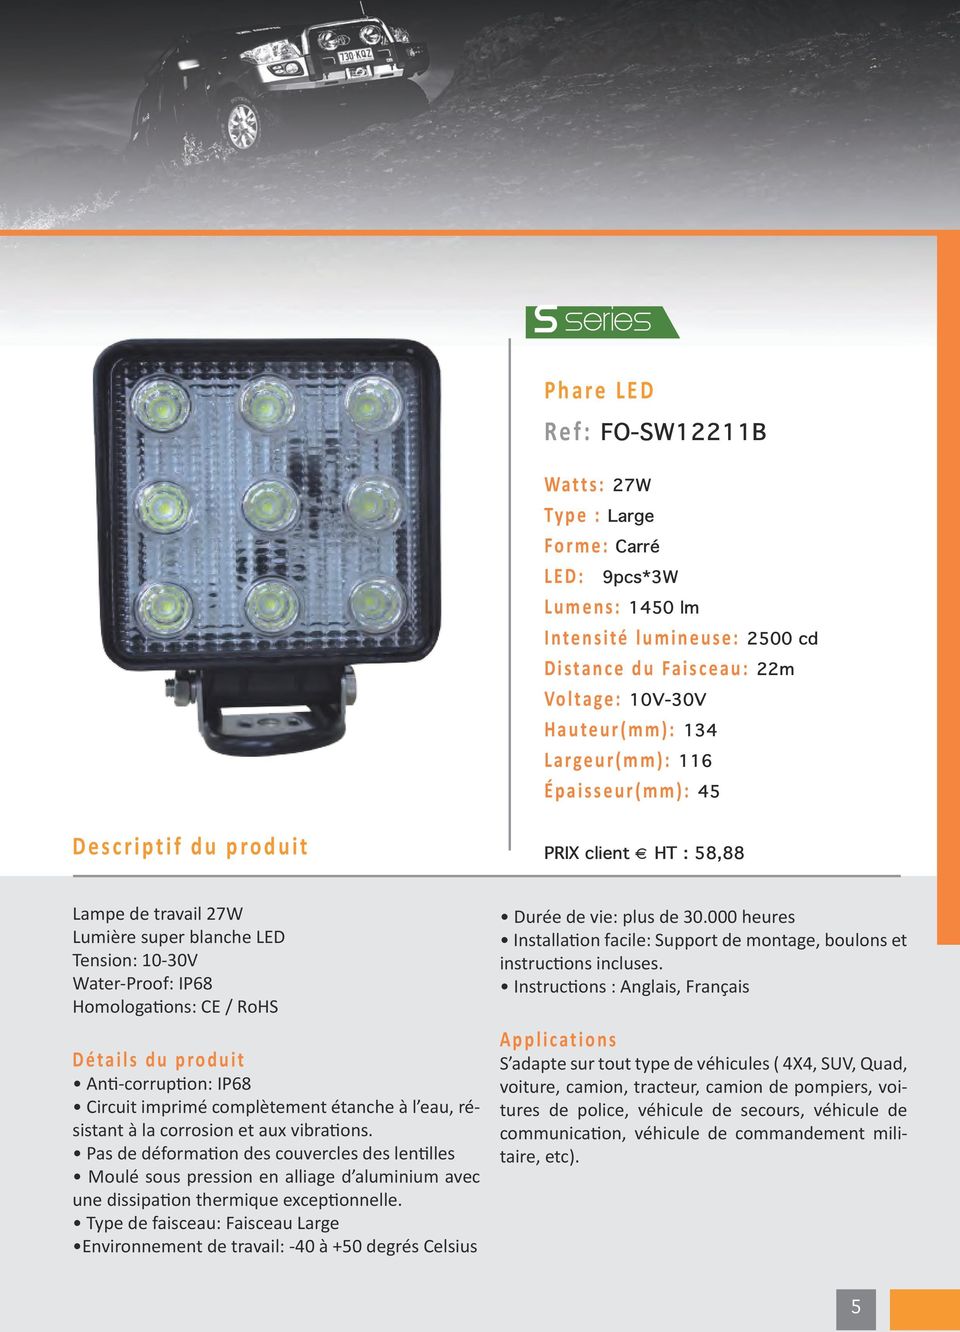 m ) : 45 PRIX client HT : 58,88 Lampe de travail 27W Water-Proof: IP68 Pas de déformation des couvercles des lentilles Moulé sous pression